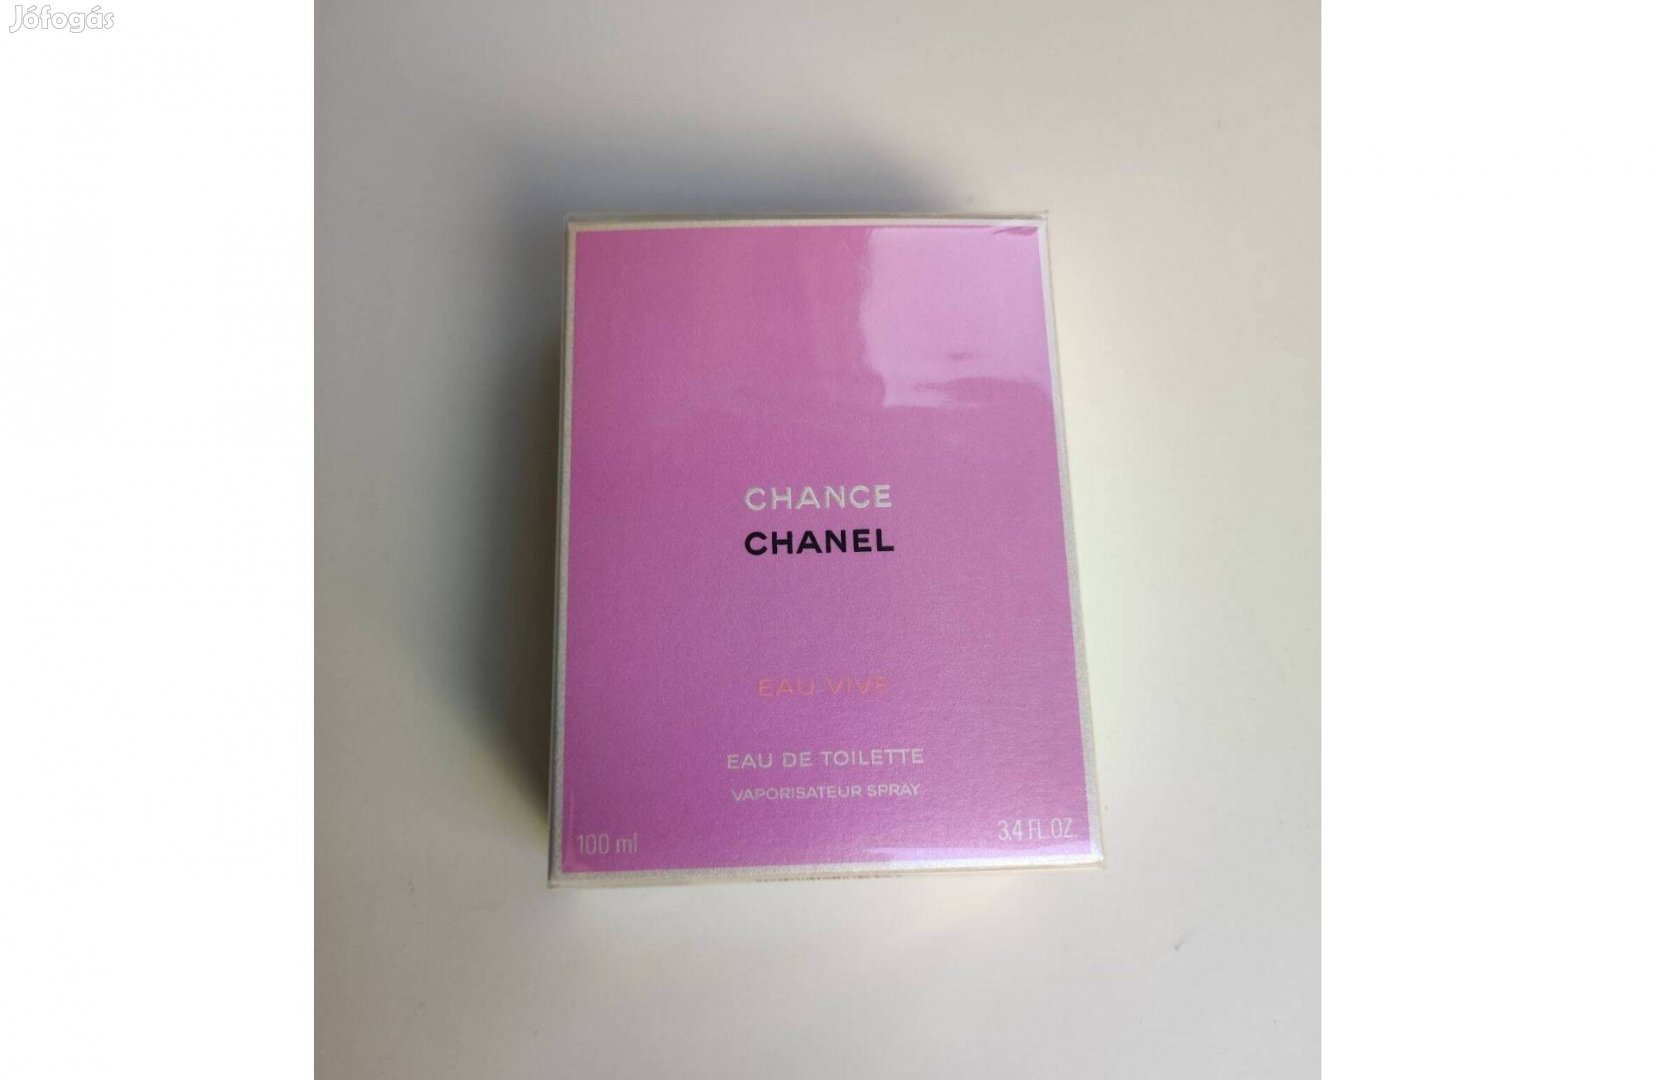 Chanel Chance Eau Vive EDT 100 ml - új, bontatlan, eredeti